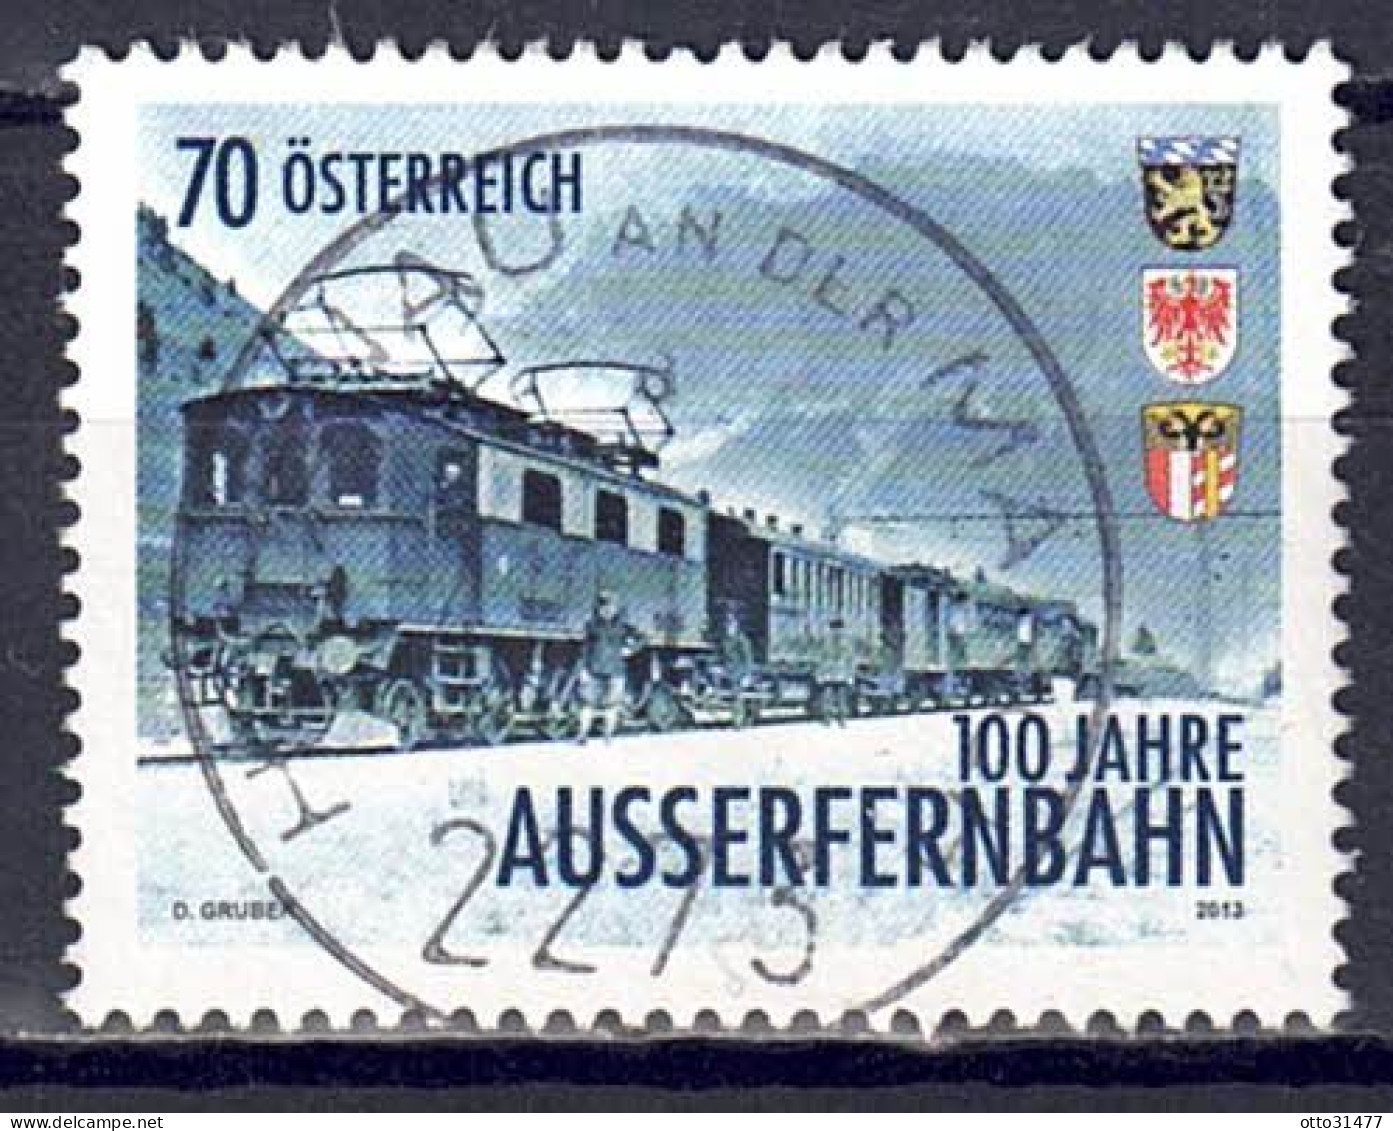 Österreich 2013 - Außerfernbahn, MiNr. 3086, Gestempelt / Used - Usados